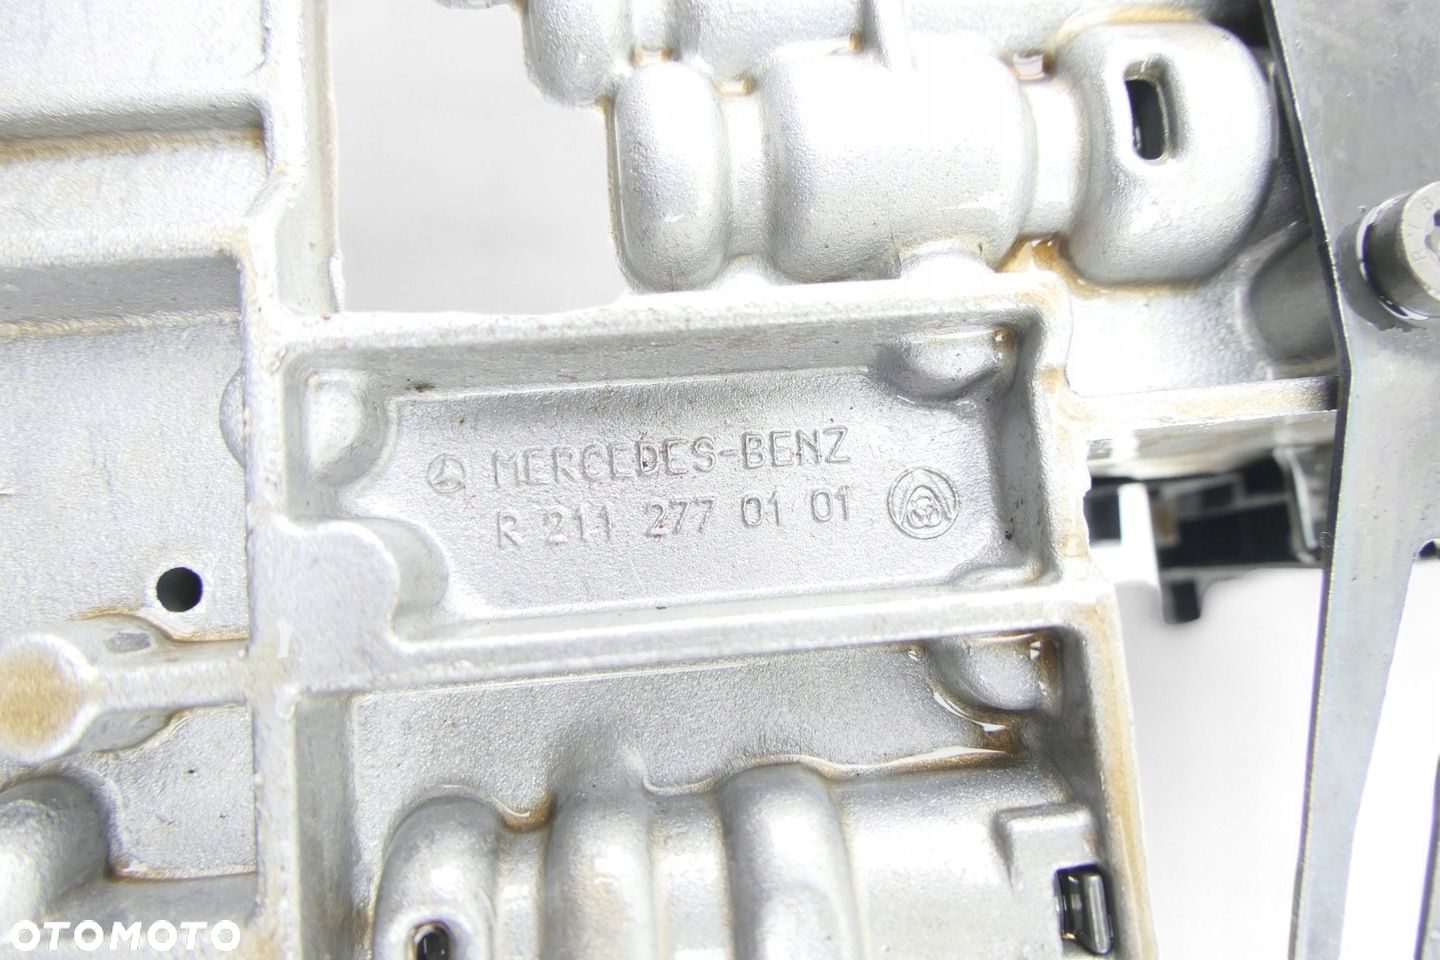 Sterownik Mechatronika Skrzyni Biegów MERCEDES W211 3.2 CDI R2112770101 - 8